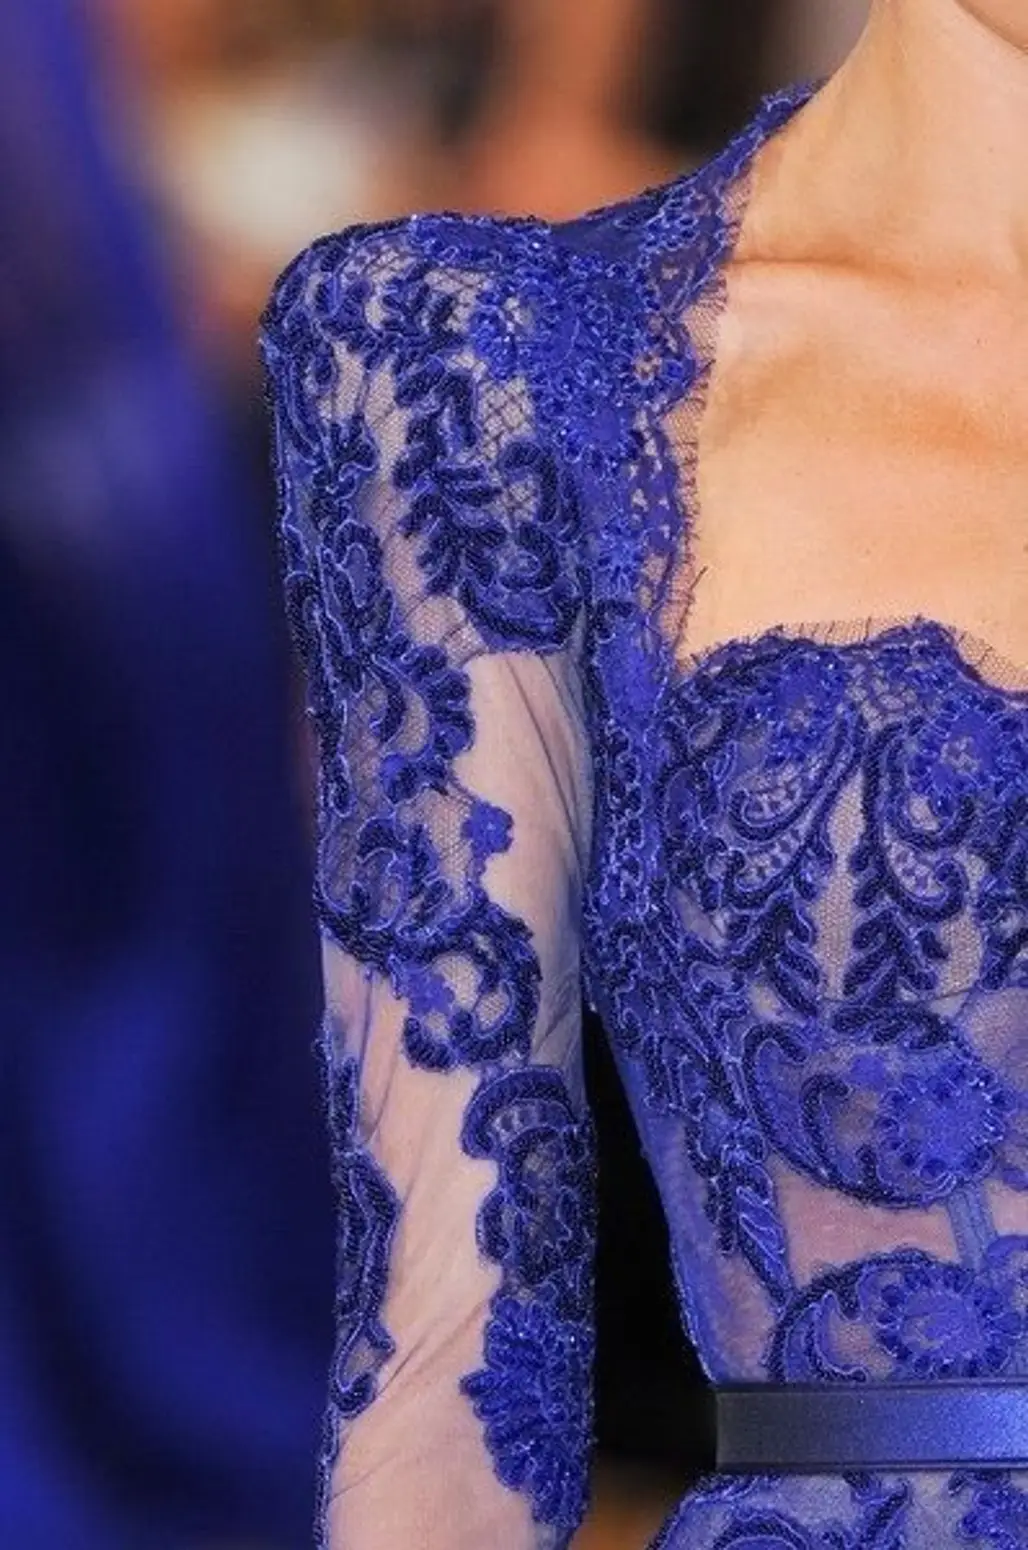 Blue Lace